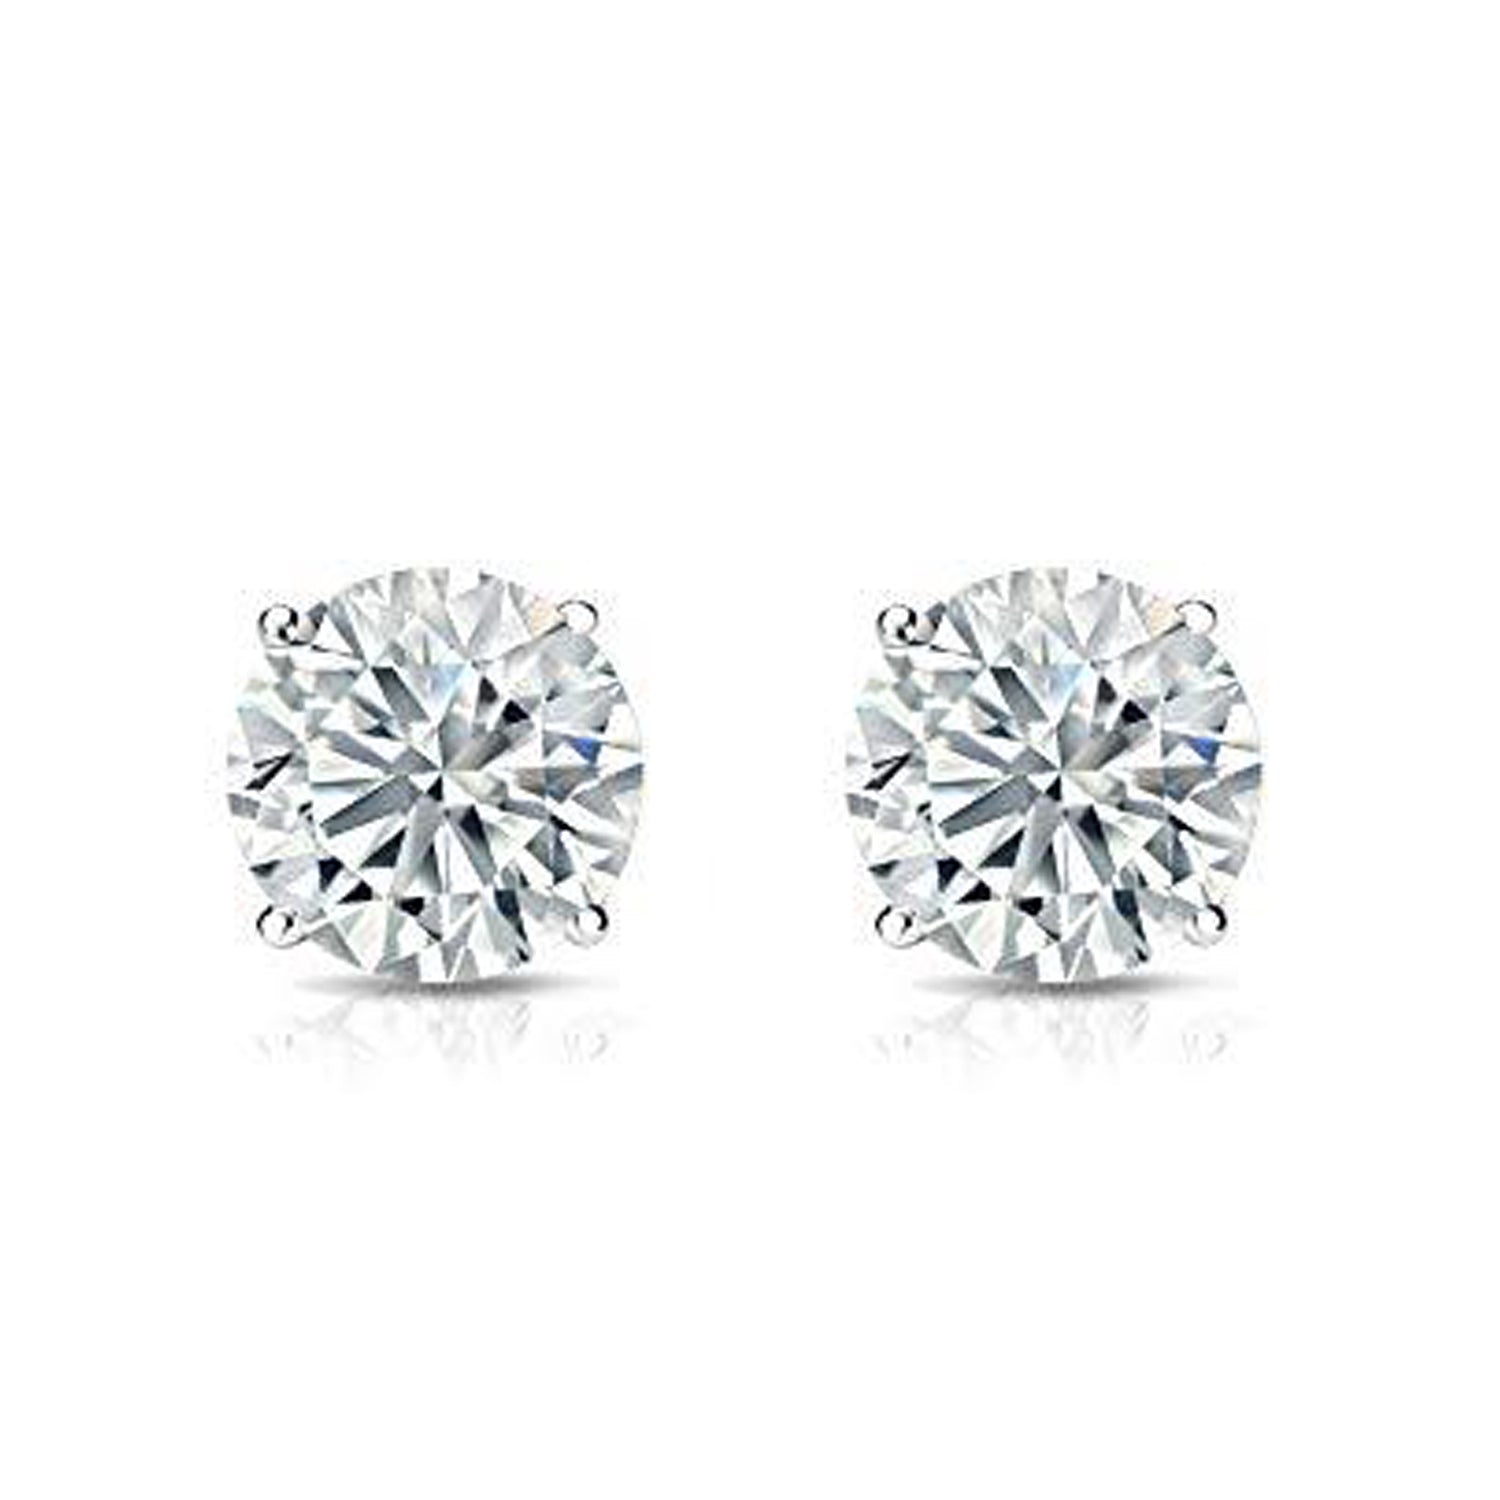 I.G.L Certified 1/2 Cttw Diamond Stud Earrings set in 14K White Gold fine jewelry certified diamond